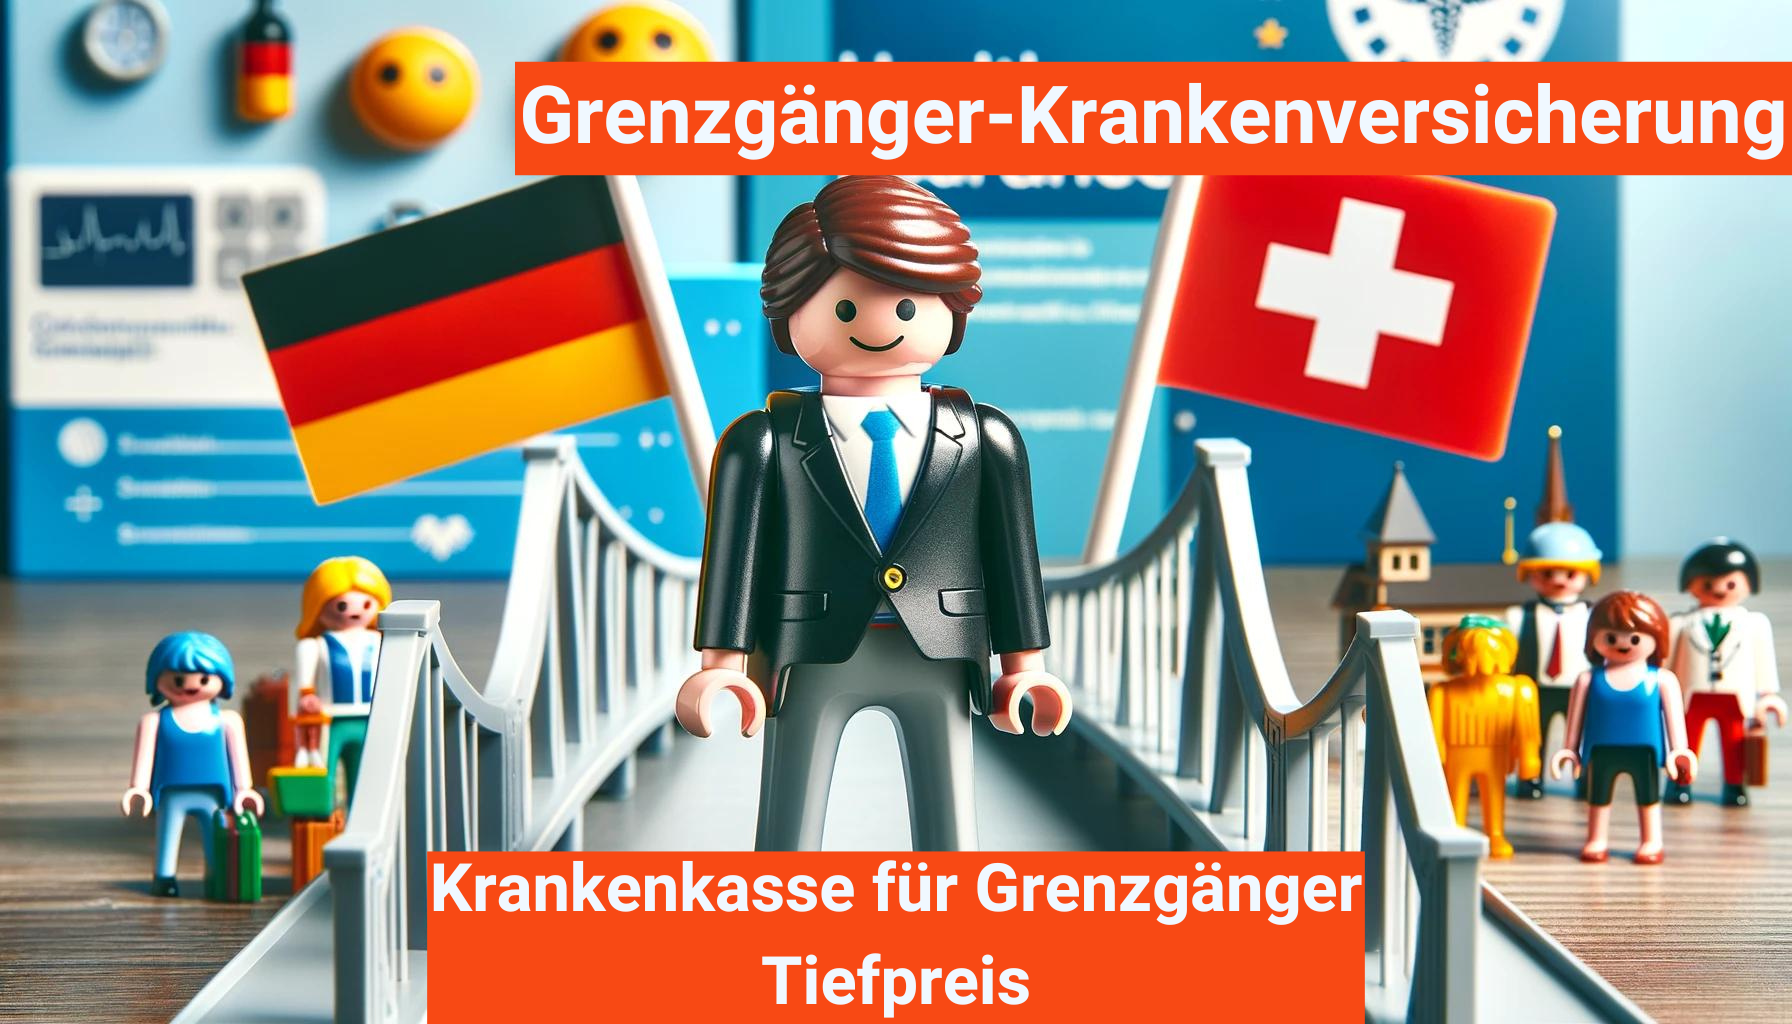 Grenzgänger-Krankenversicherung Schweiz, grenzgänger schweiz deutschland krankenversicherung, krankenversicherung schweiz, krankenversicherung für die schweiz, krankenversicherung für grenzgänger schweiz